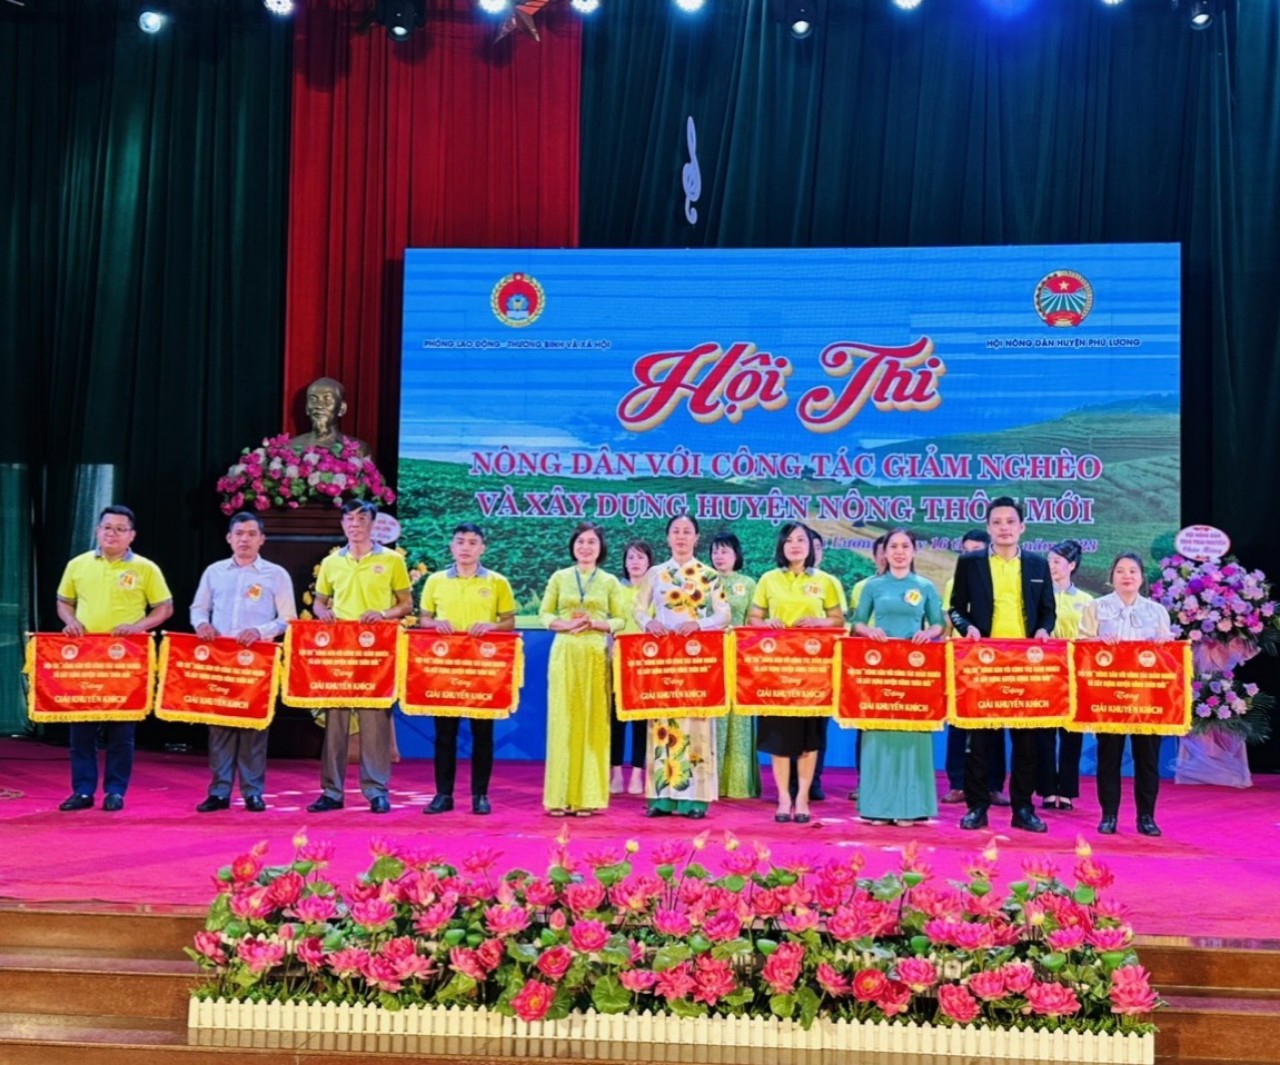 Hội Nông dân huyện Phú Lương (Thái Nguyên) tổ chức Hội thi “Nông dân với công tác giảm nghèo” năm 2023 - Ảnh 3.